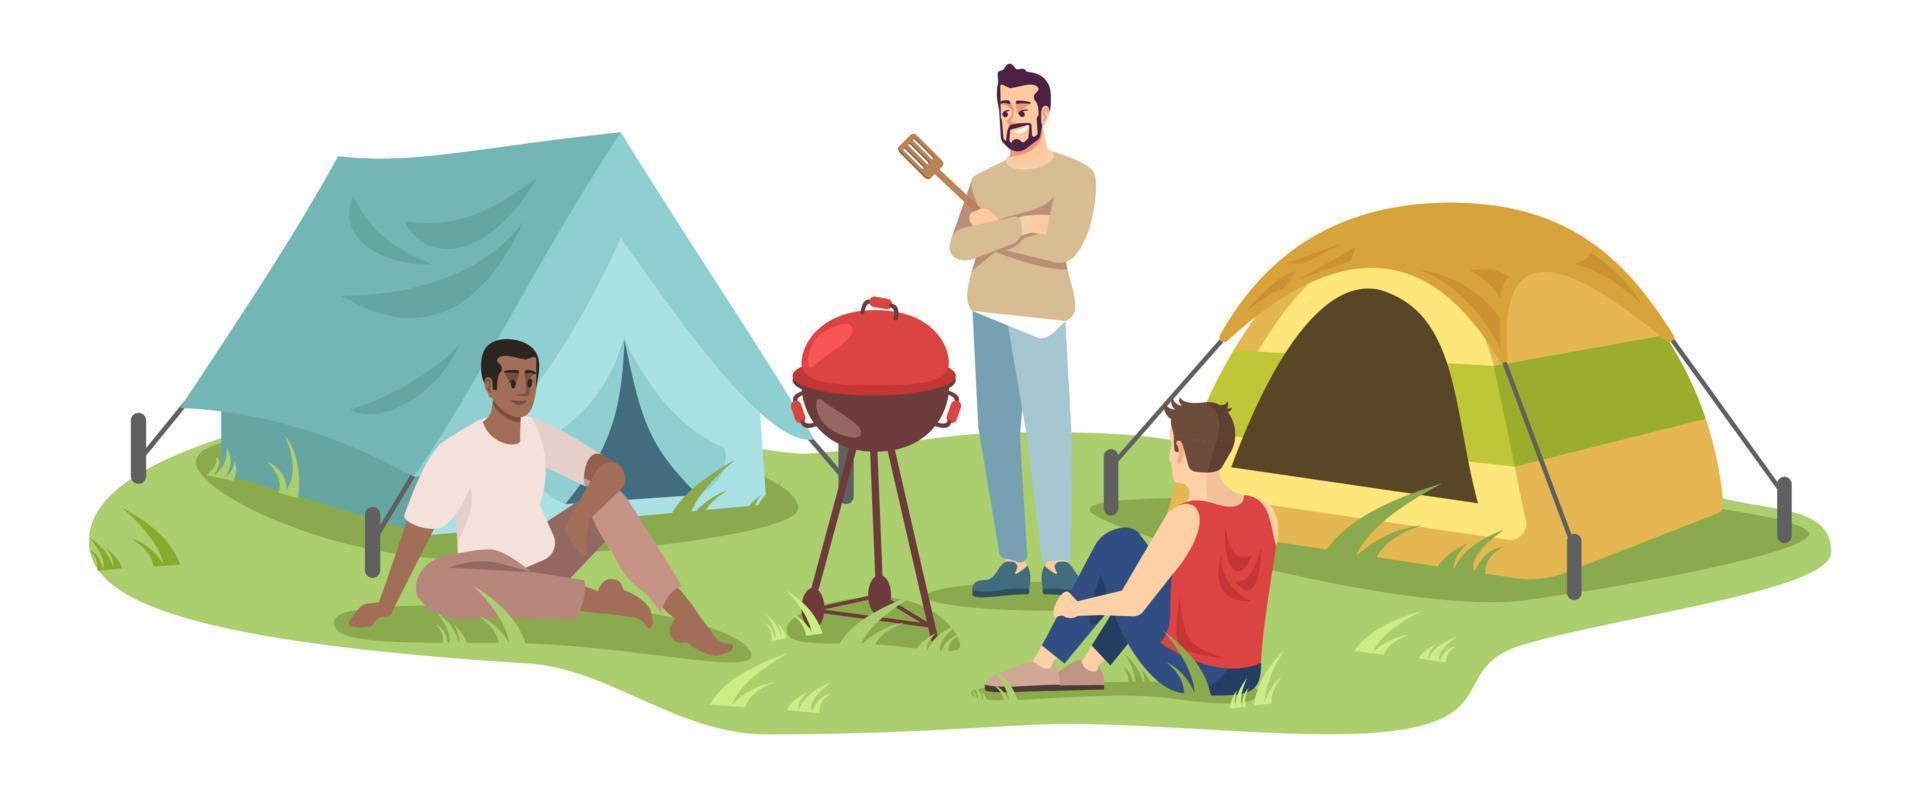 reizen camping platte vectorillustratie. jonge kampeerders op barbecue stripfiguren. gelukkige mannen groep op picknick, zomervakantie. seizoensgebonden openluchtrecreatie op een witte achtergrond vector